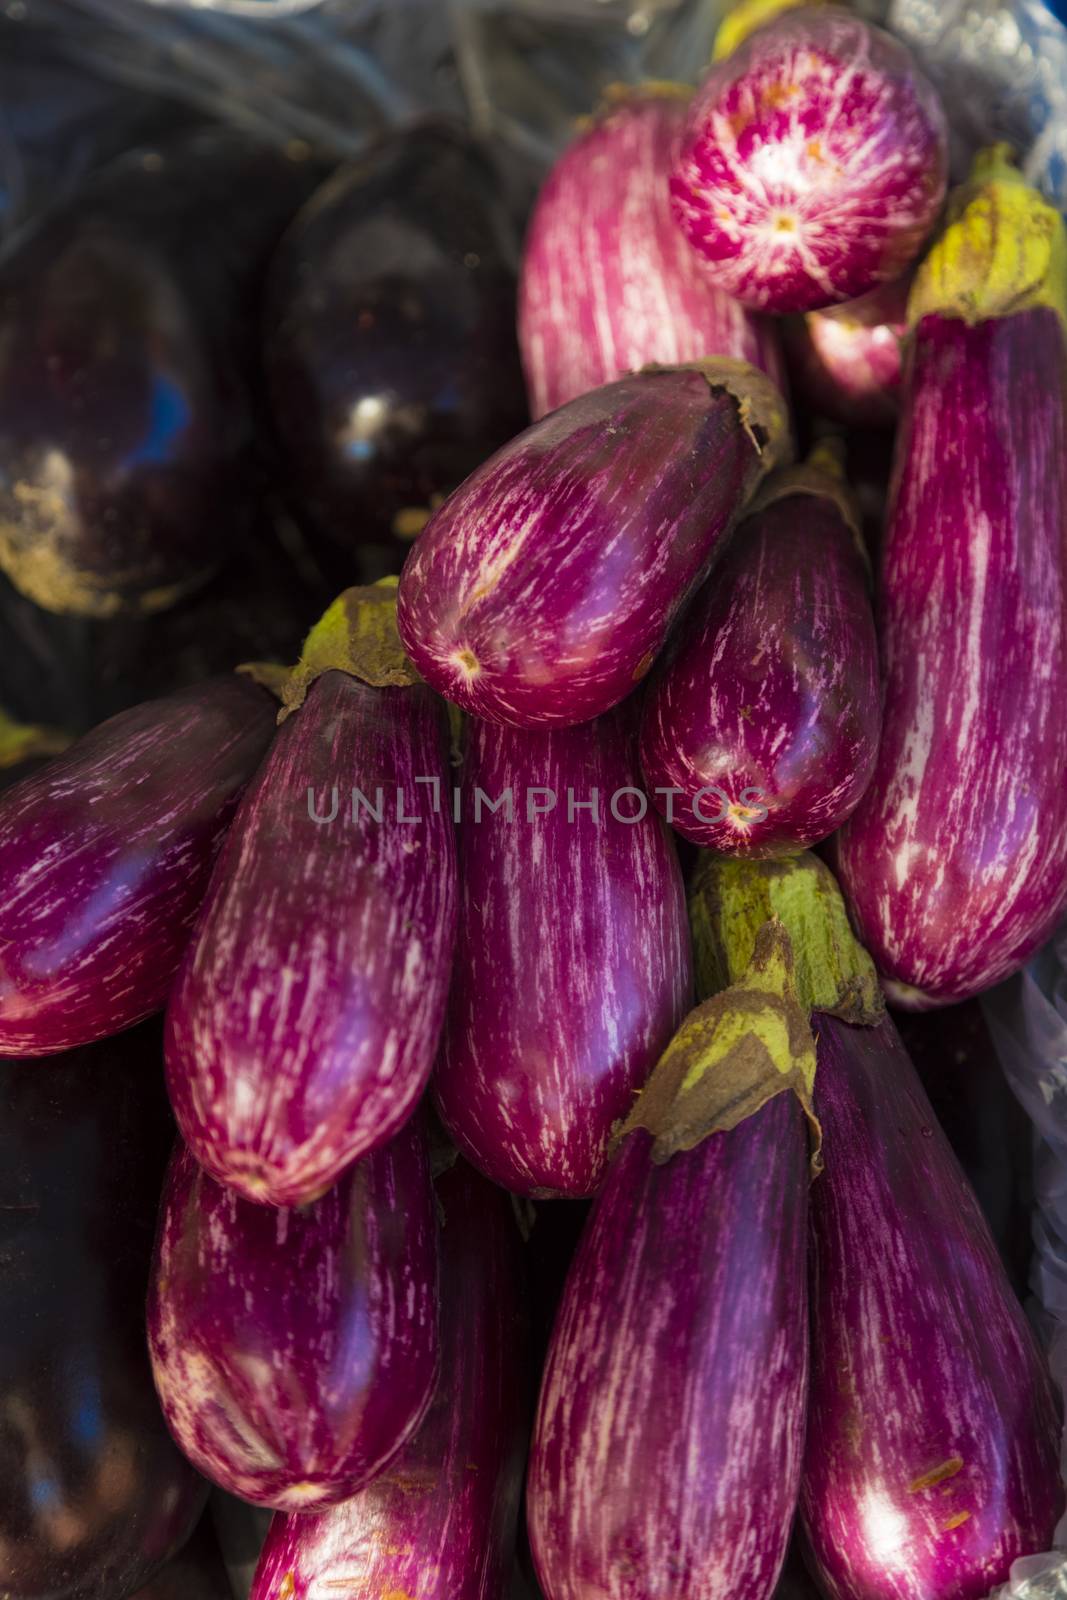 Zuchinni and eggplant  in supermarket by Nemida